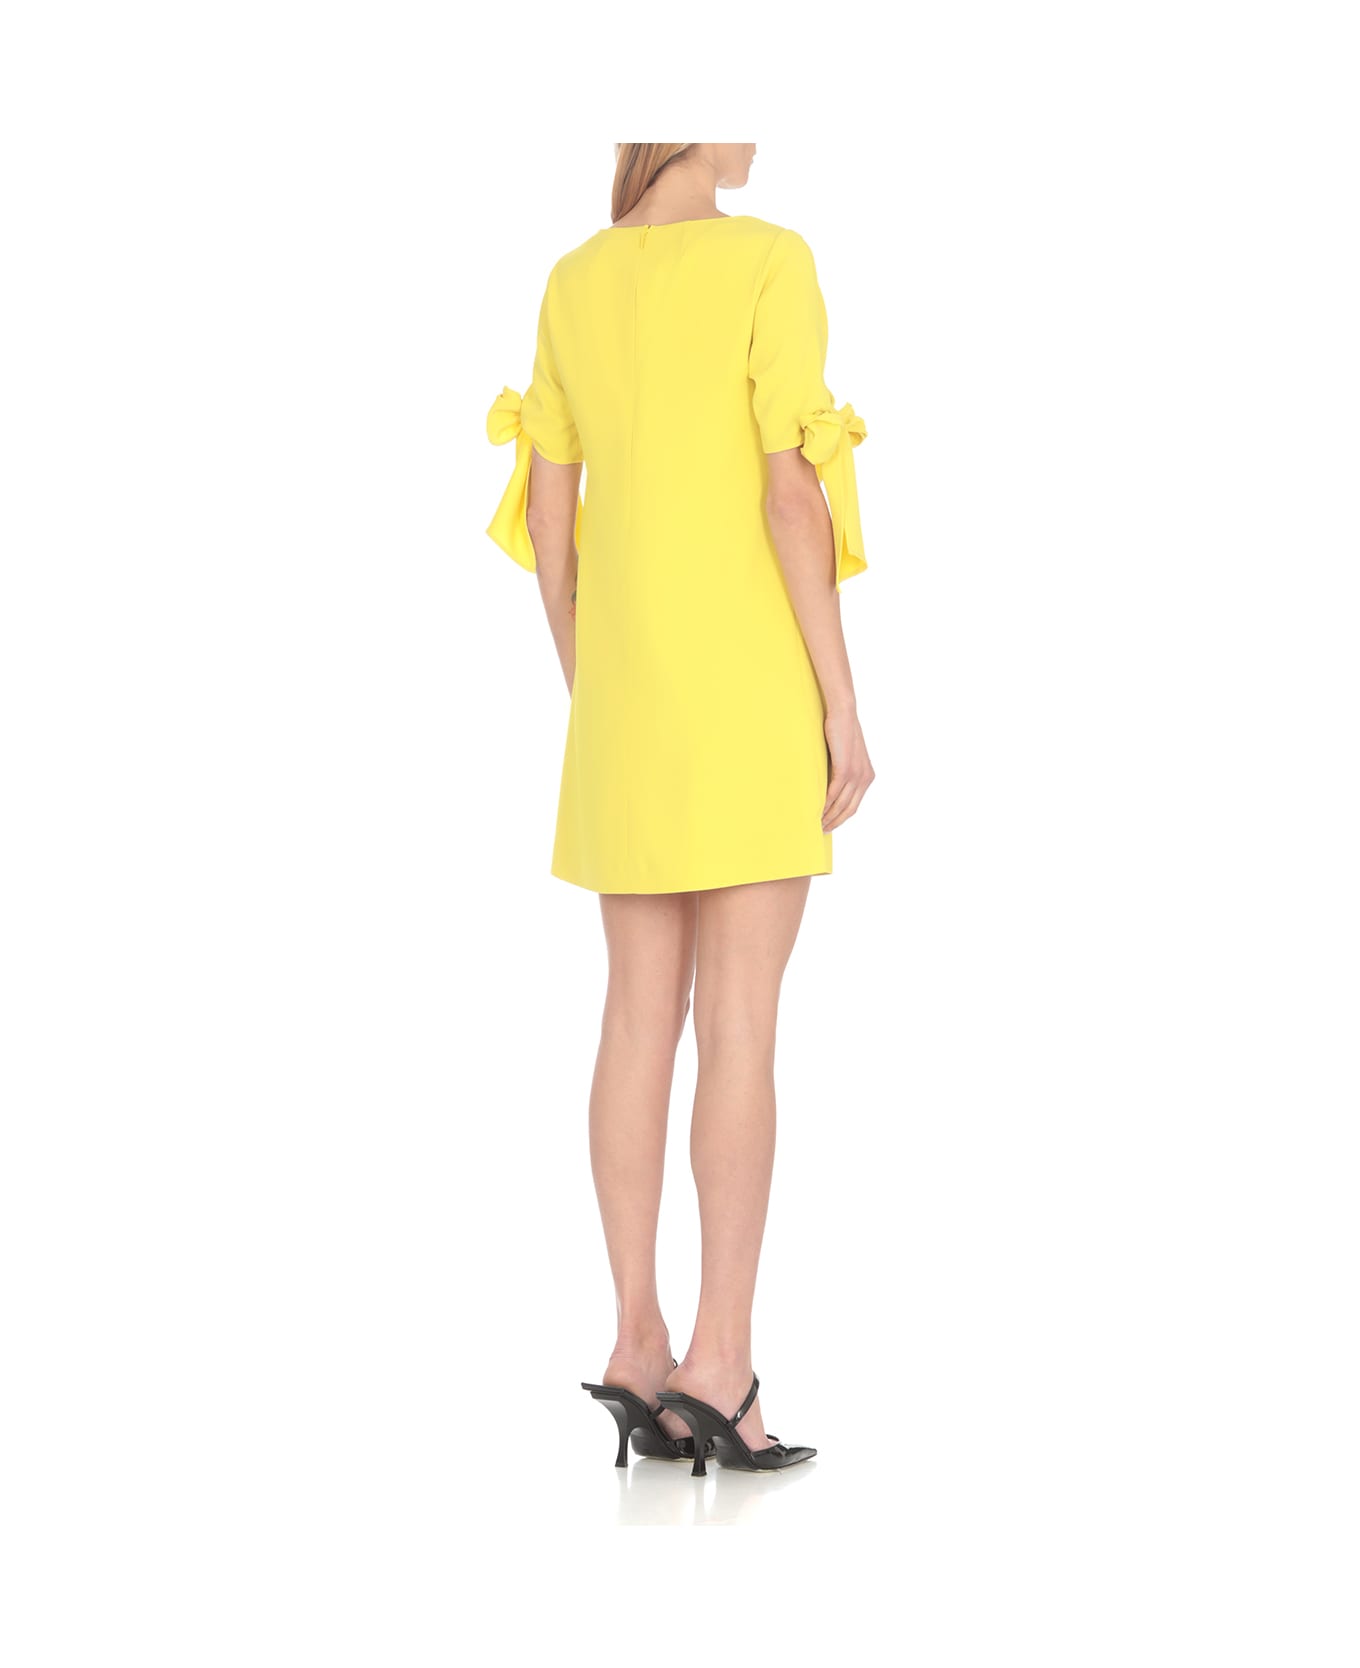 Pinko Verdicchio Dress - Yellow